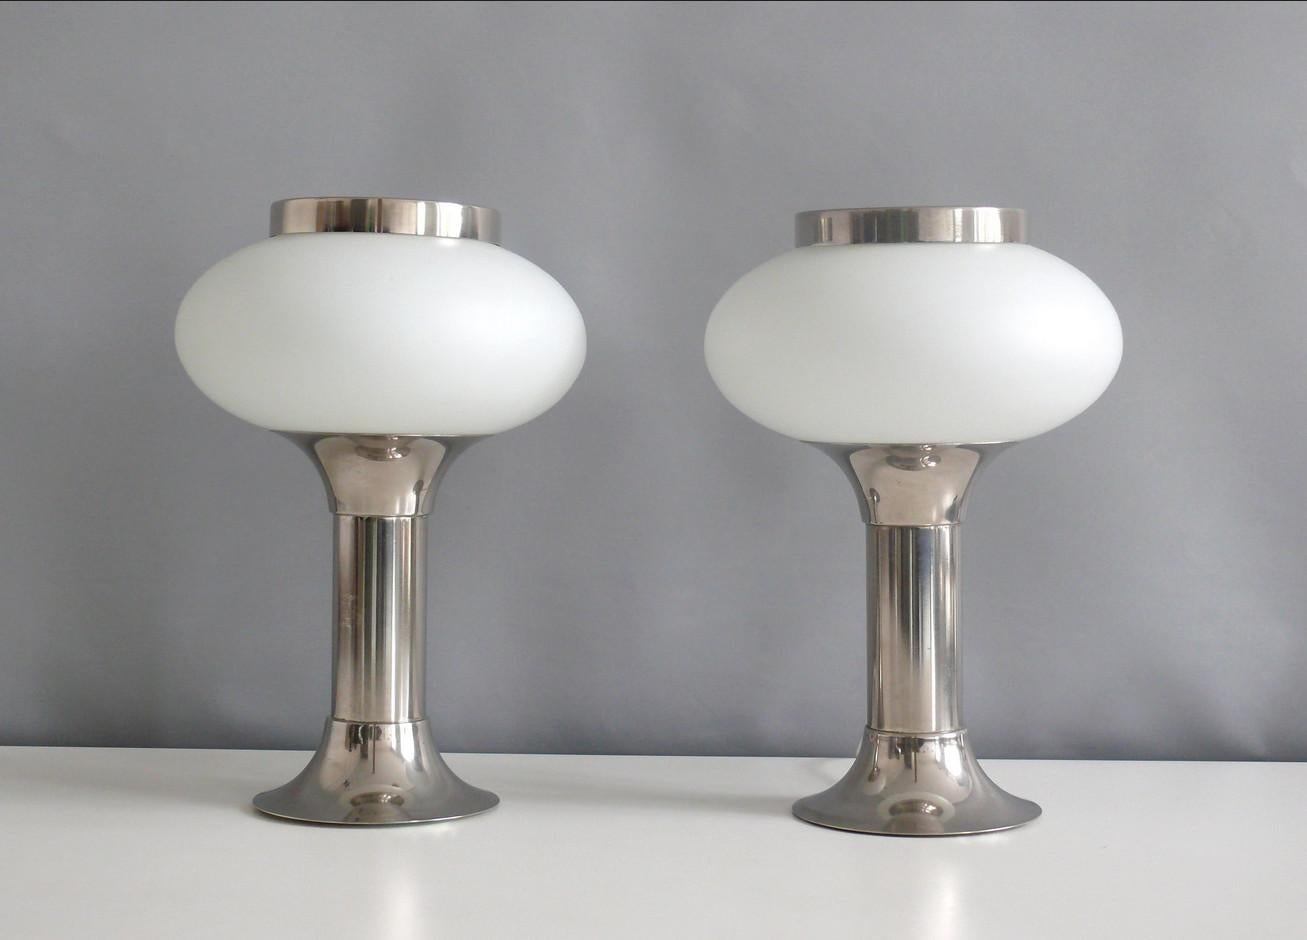 Zwei seltene und elegante Tischlampen aus Opalglas mit verchromtem Metallsockel von VEB Narva Leuchtenbau Lengenfeld, DDR - Designklassiker der Space Age Ära, 1970er Jahre. Eine Besonderheit dieser Leuchte ist der Metallring, der lose auf den